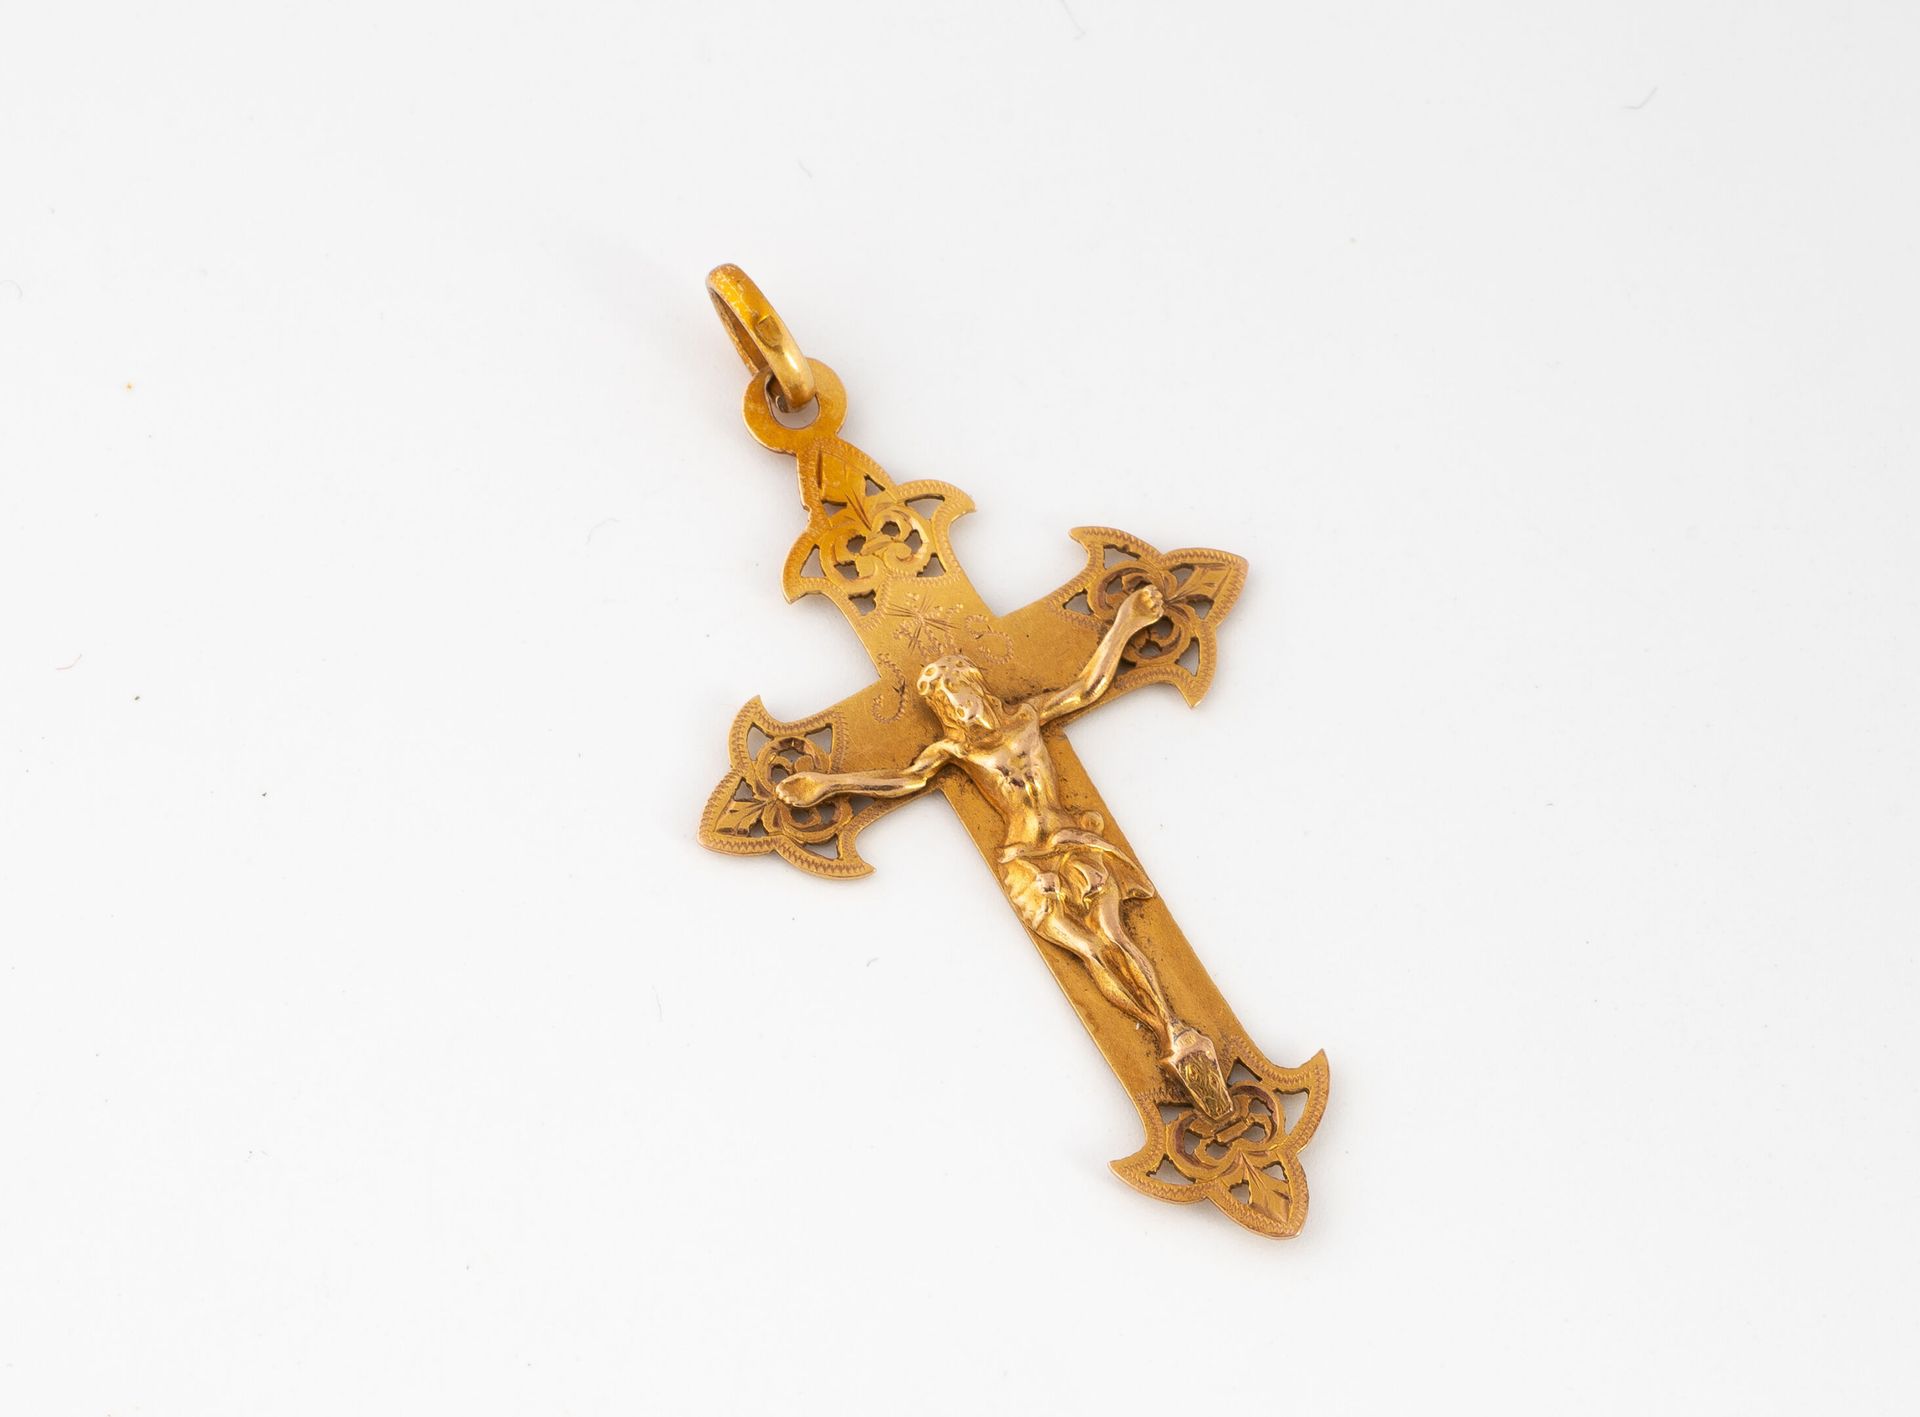 Null Kreuzanhänger aus Gelbgold (750).
Gewicht: 3,0 g. - H. Ca. 4,5 cm.
Kratzer &hellip;